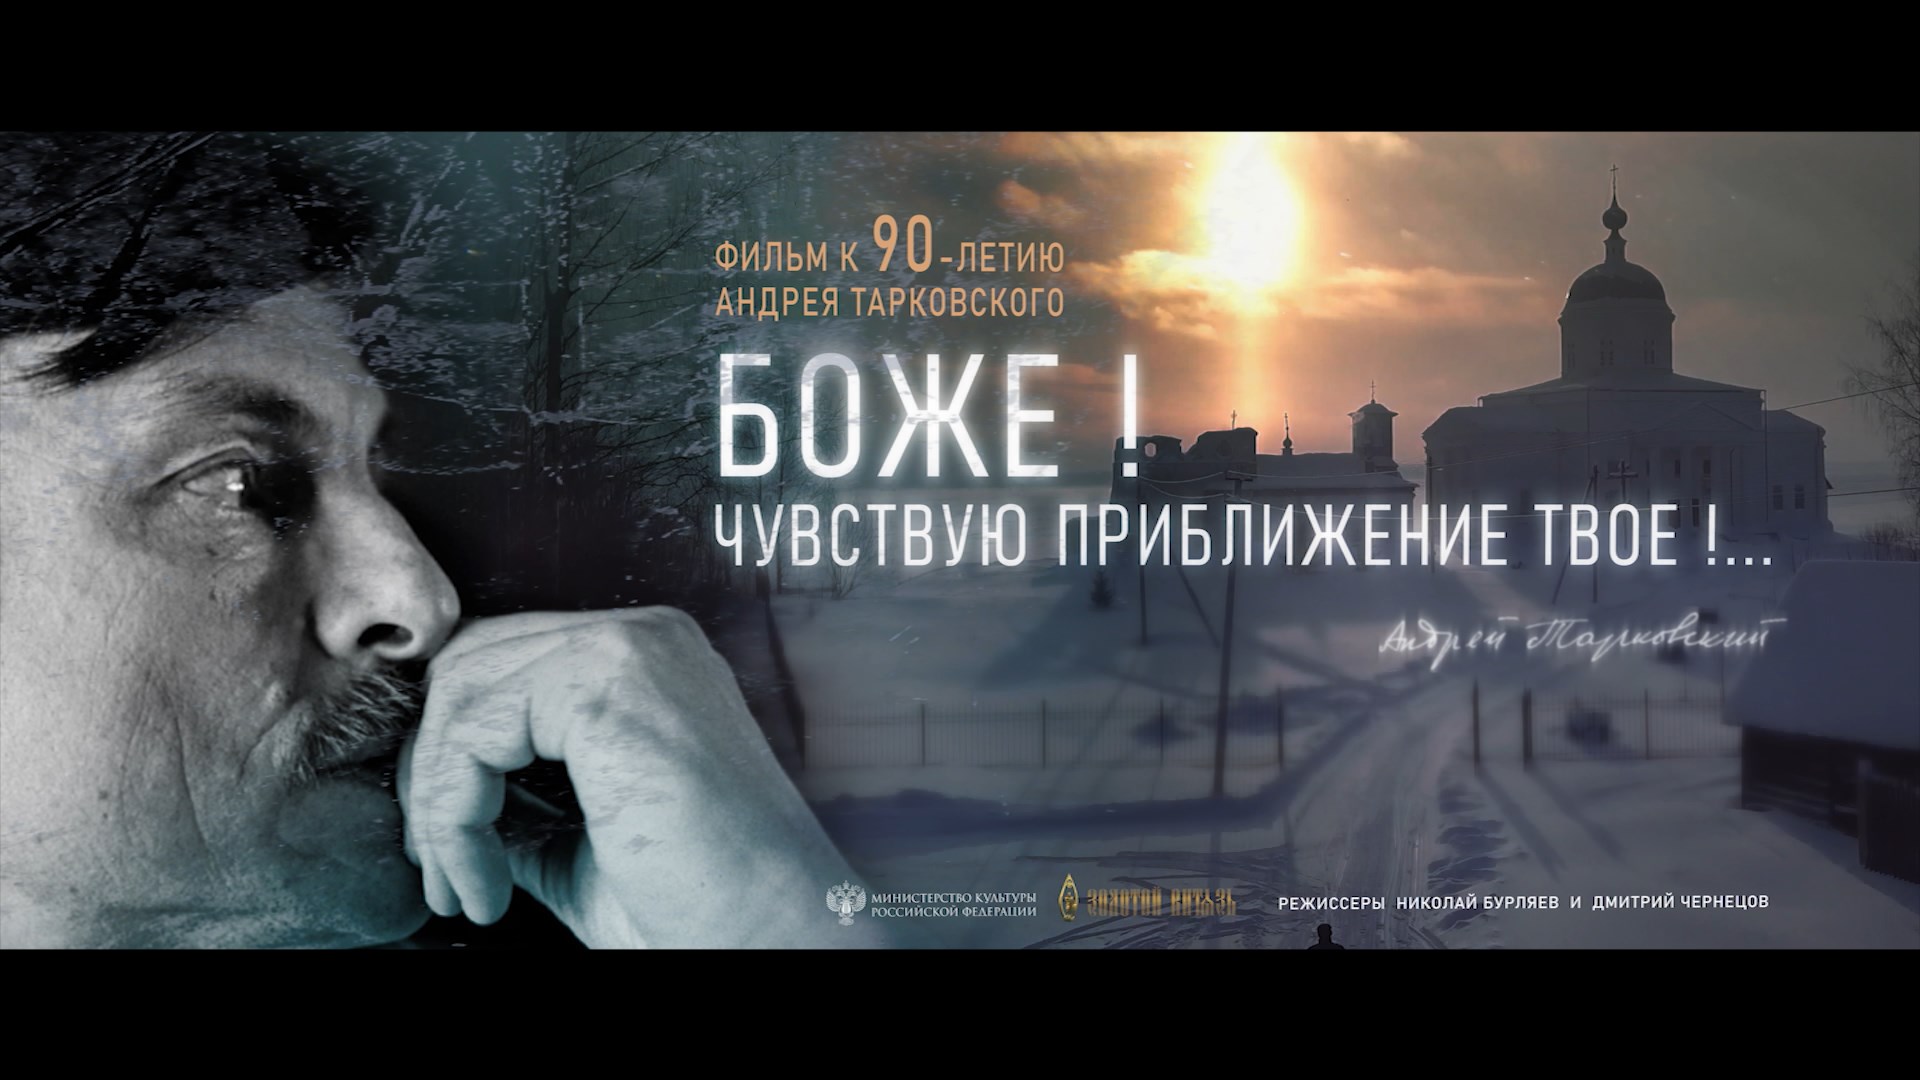 Костромичам представят документальный фильм об известном земляке Андрее Тарковском